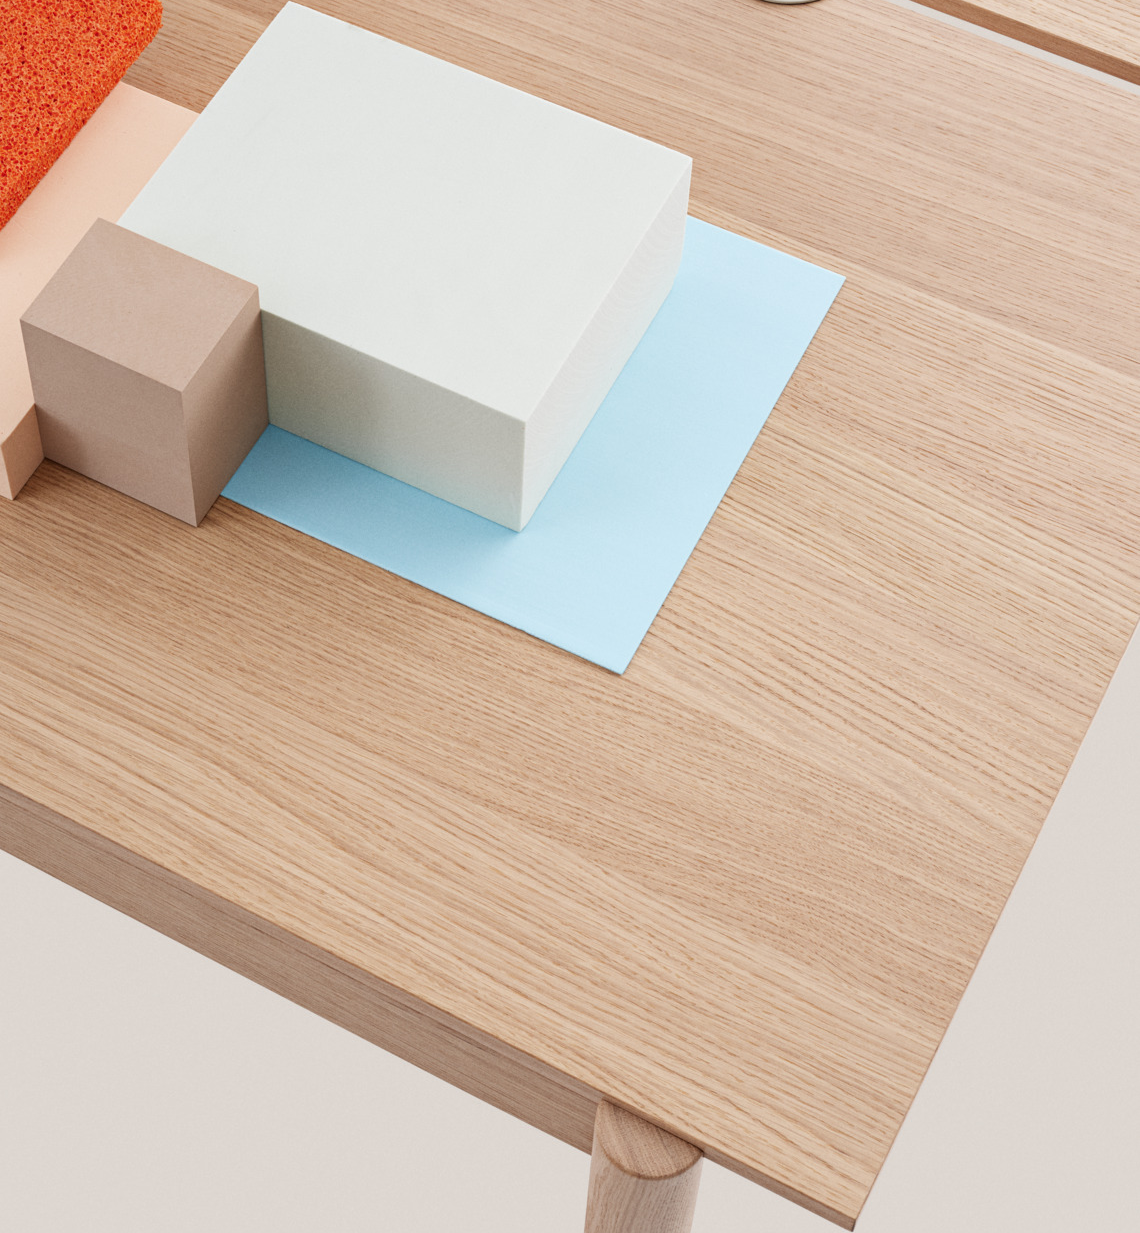 Linear System Tisch in Eichenfurnier / Eiche präsentiert im Onlineshop von KAQTU Design AG. Schreibtisch ist von Muuto